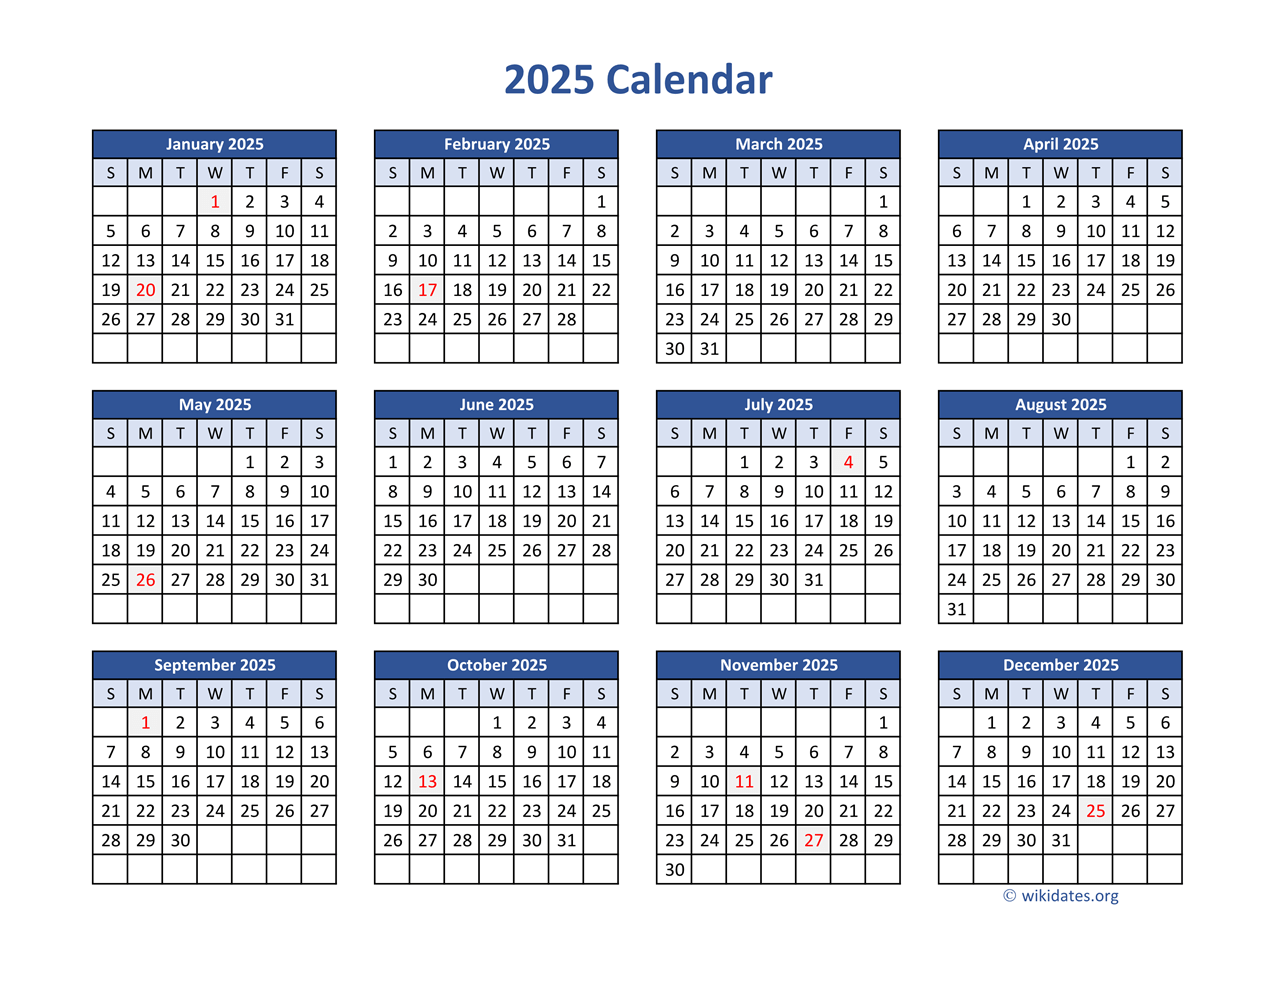 2025 Calendar In PDF WikiDates